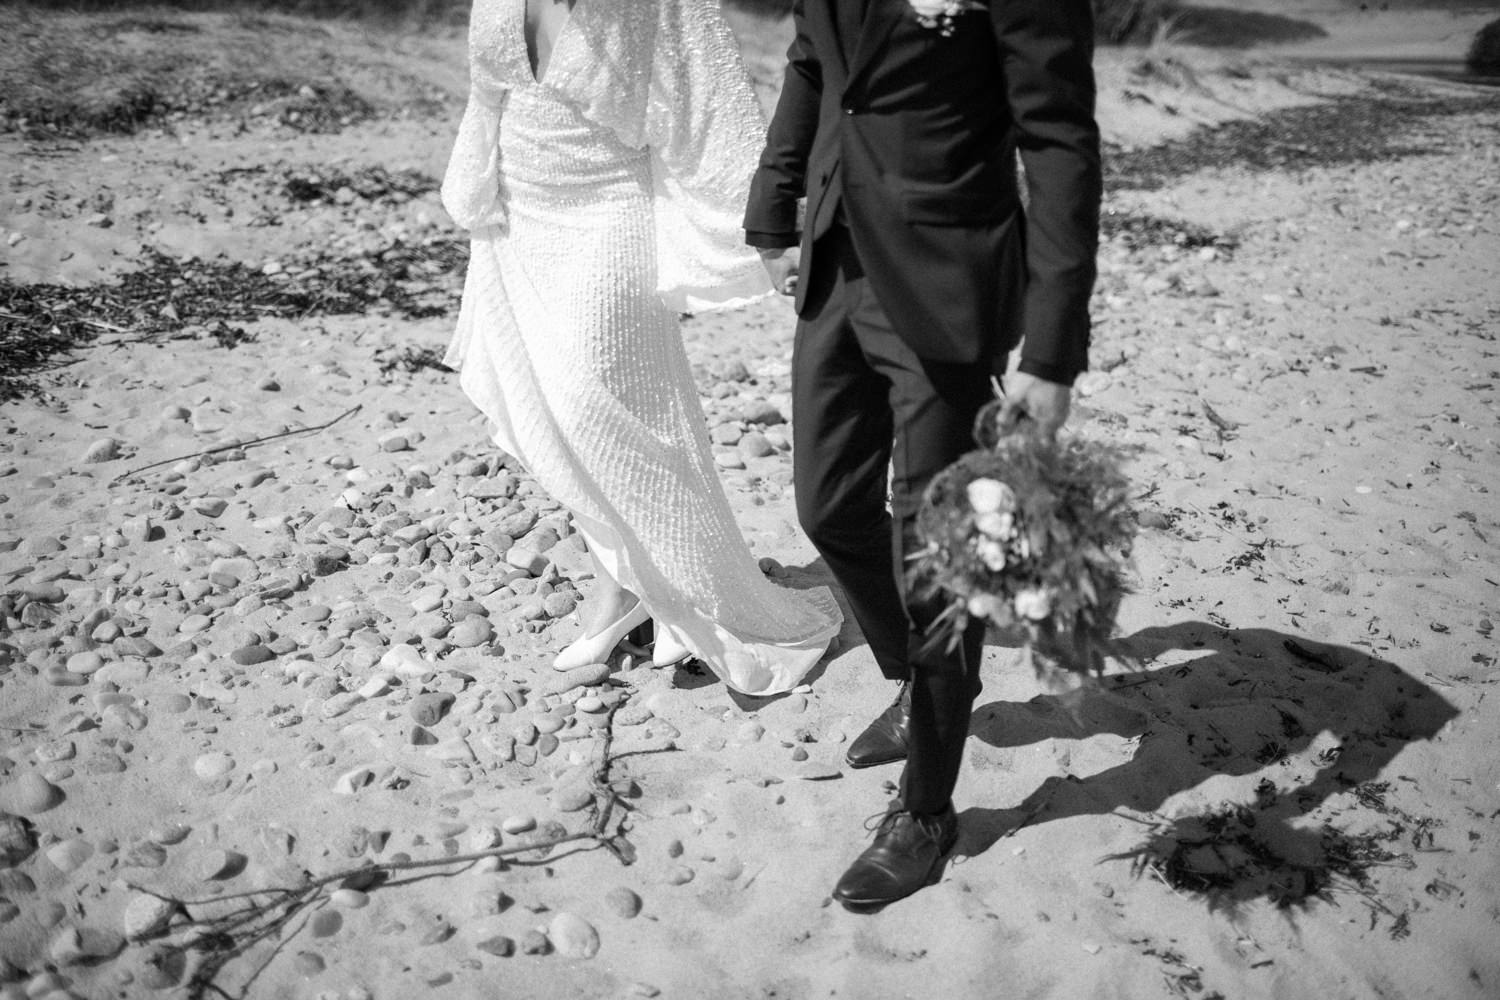 Bröllopsporträtt på stranden i Haväng under ett bröllop i Haväng. Brudparet valde en elopement till Skåne. Bröllopsfotograf är Tove Lundquist.